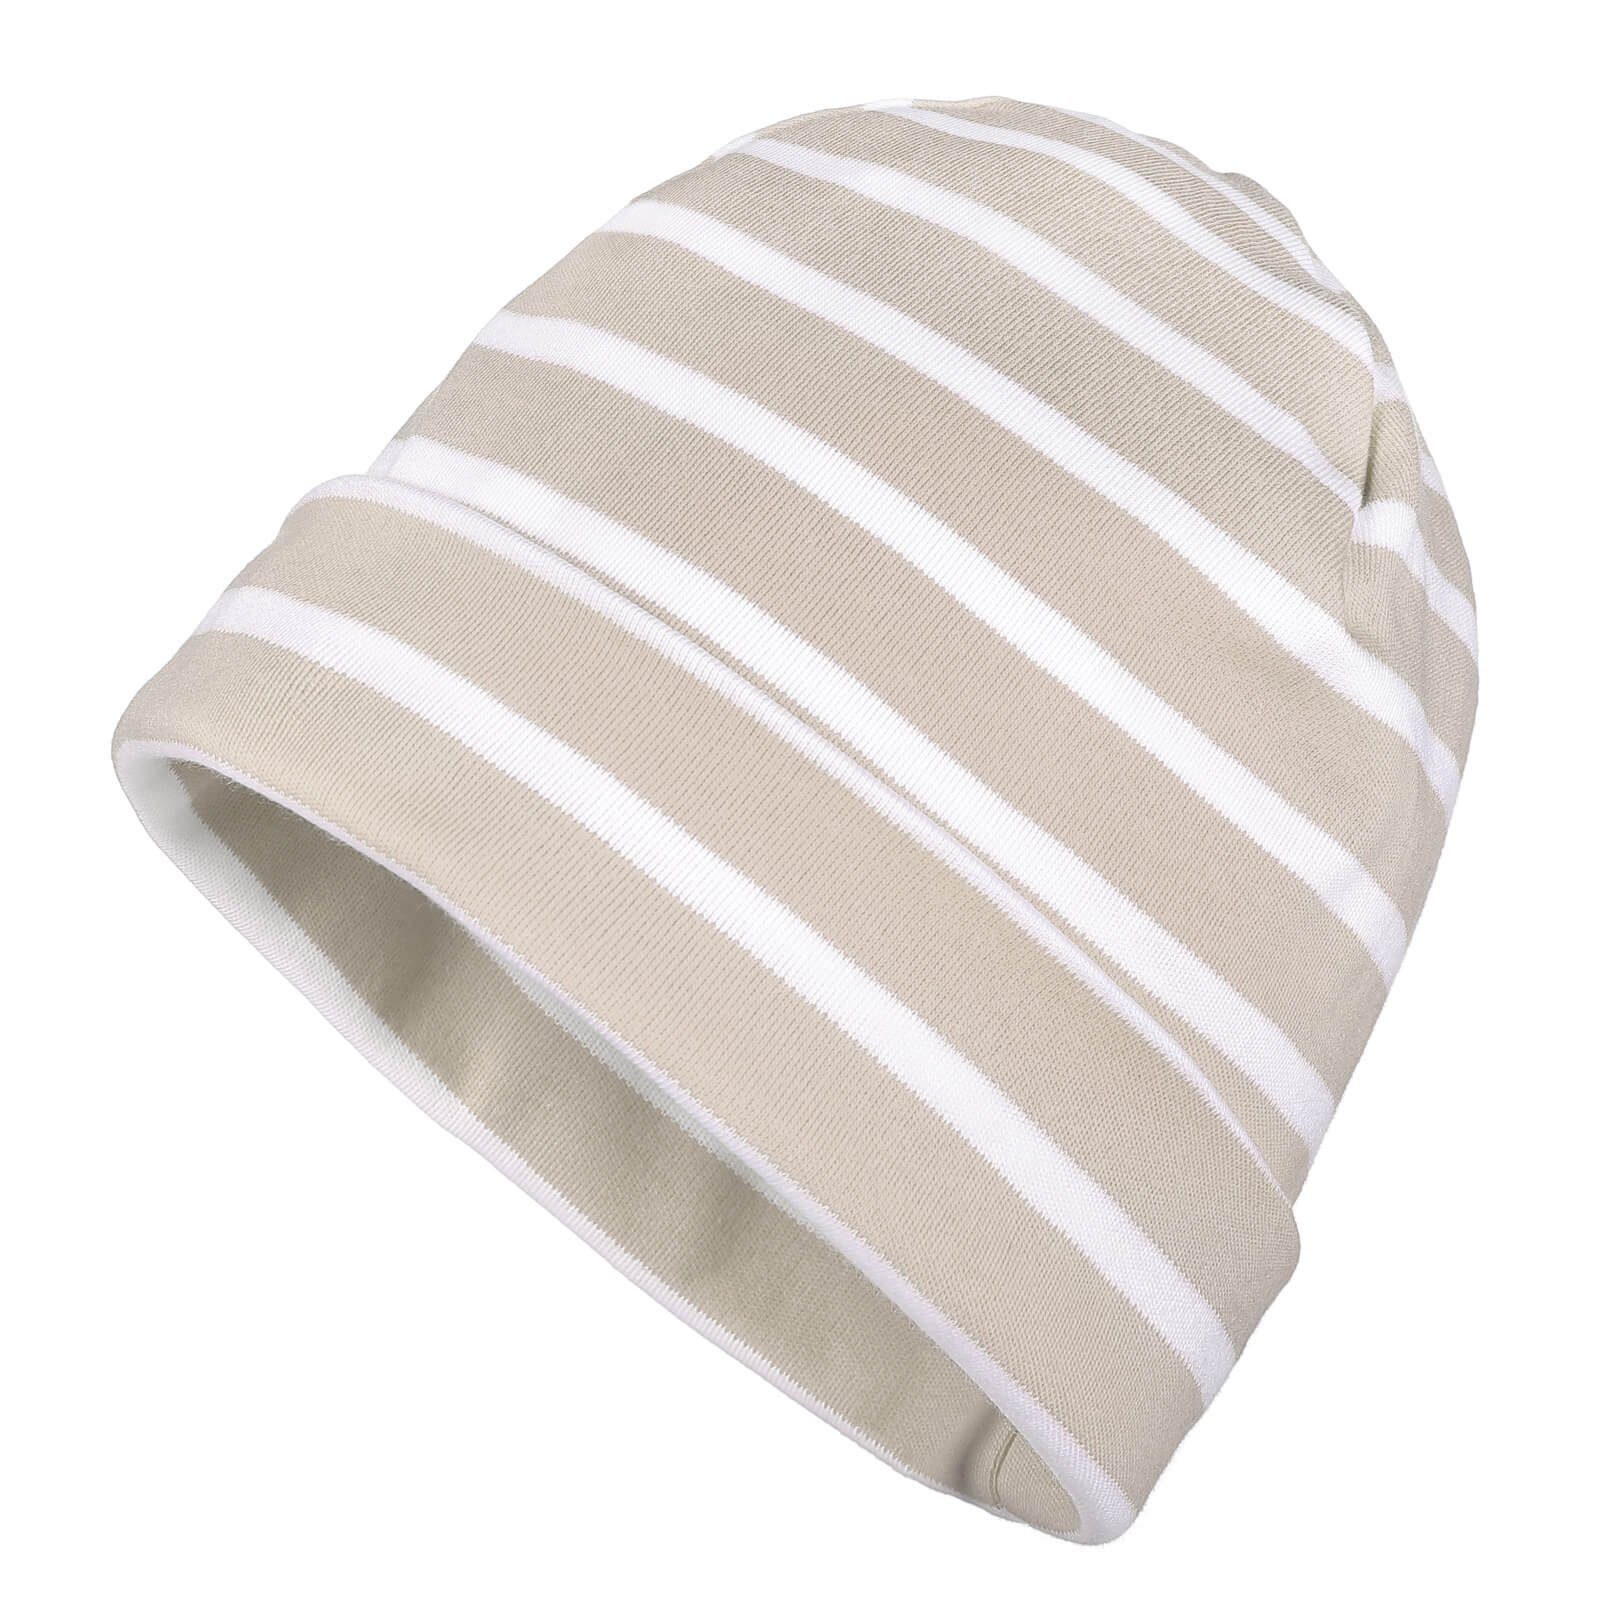 modAS Strickmütze Unisex Mütze Streifen für Kinder & Erwachsene - Ringelmütze Baumwolle (98) sand / weiß